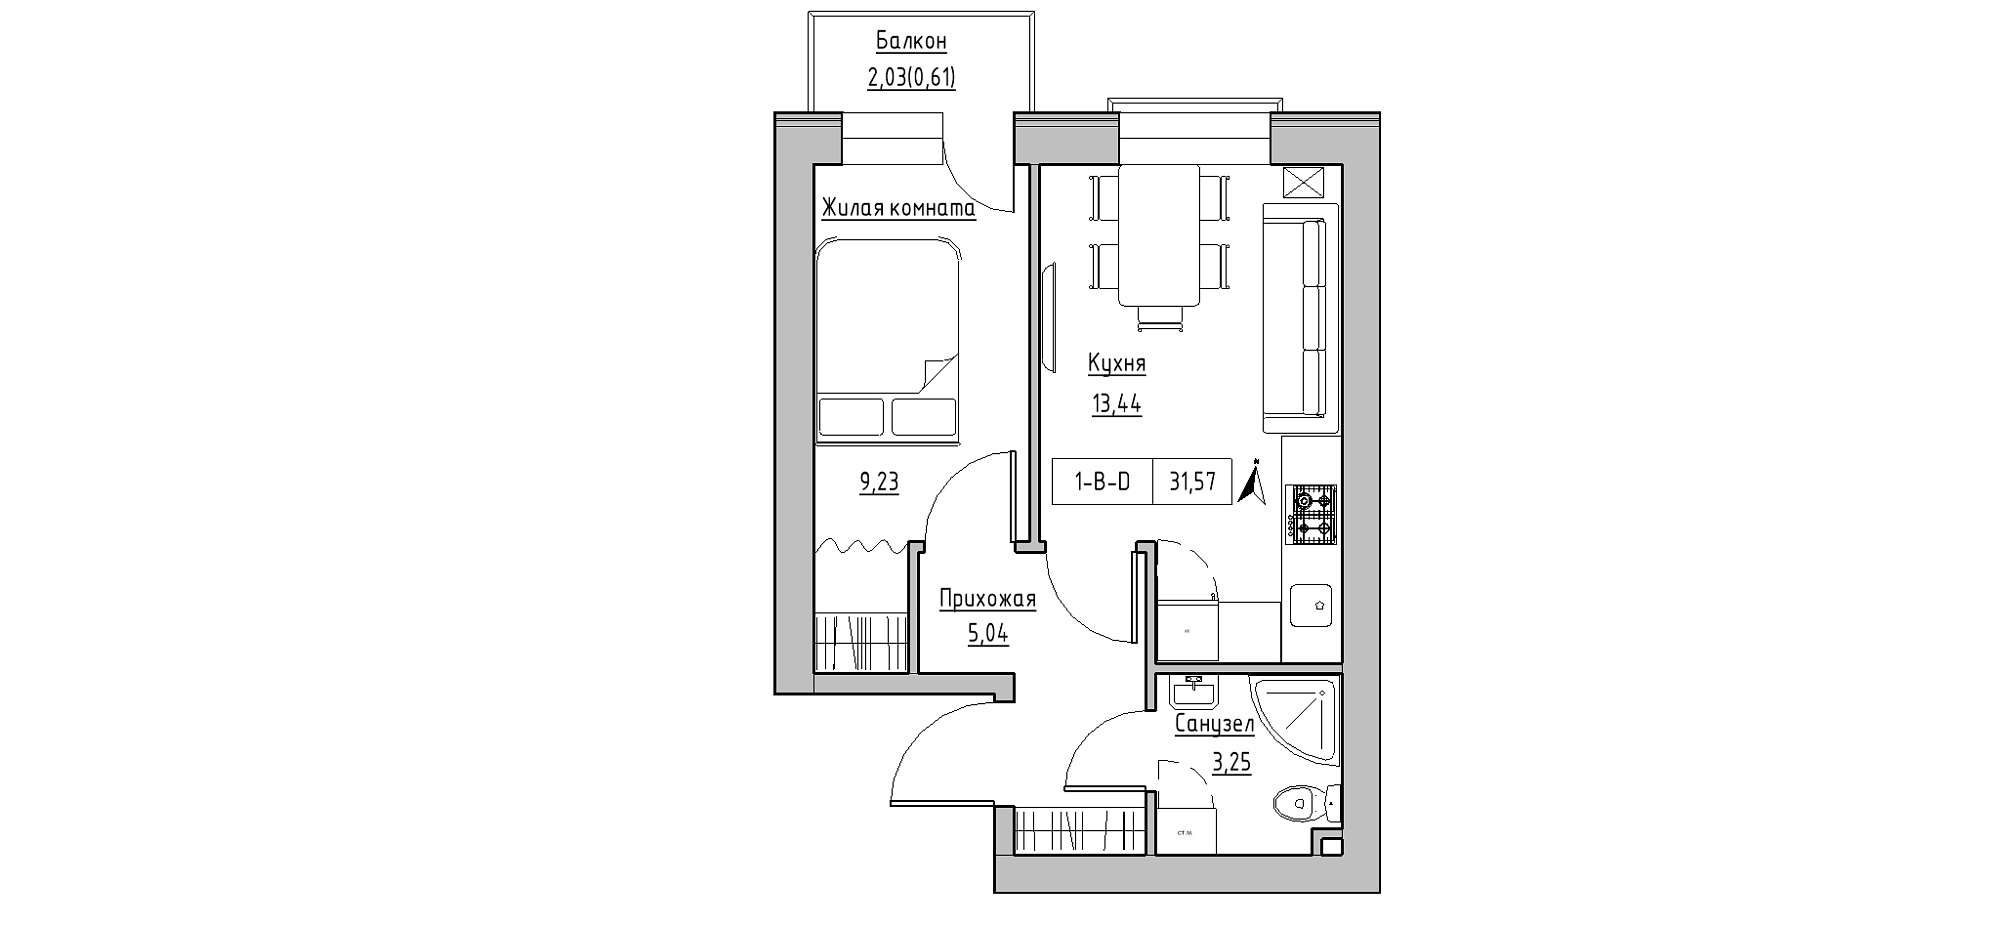 Планування 1-к квартира площею 31.57м2, KS-020-03/0003.